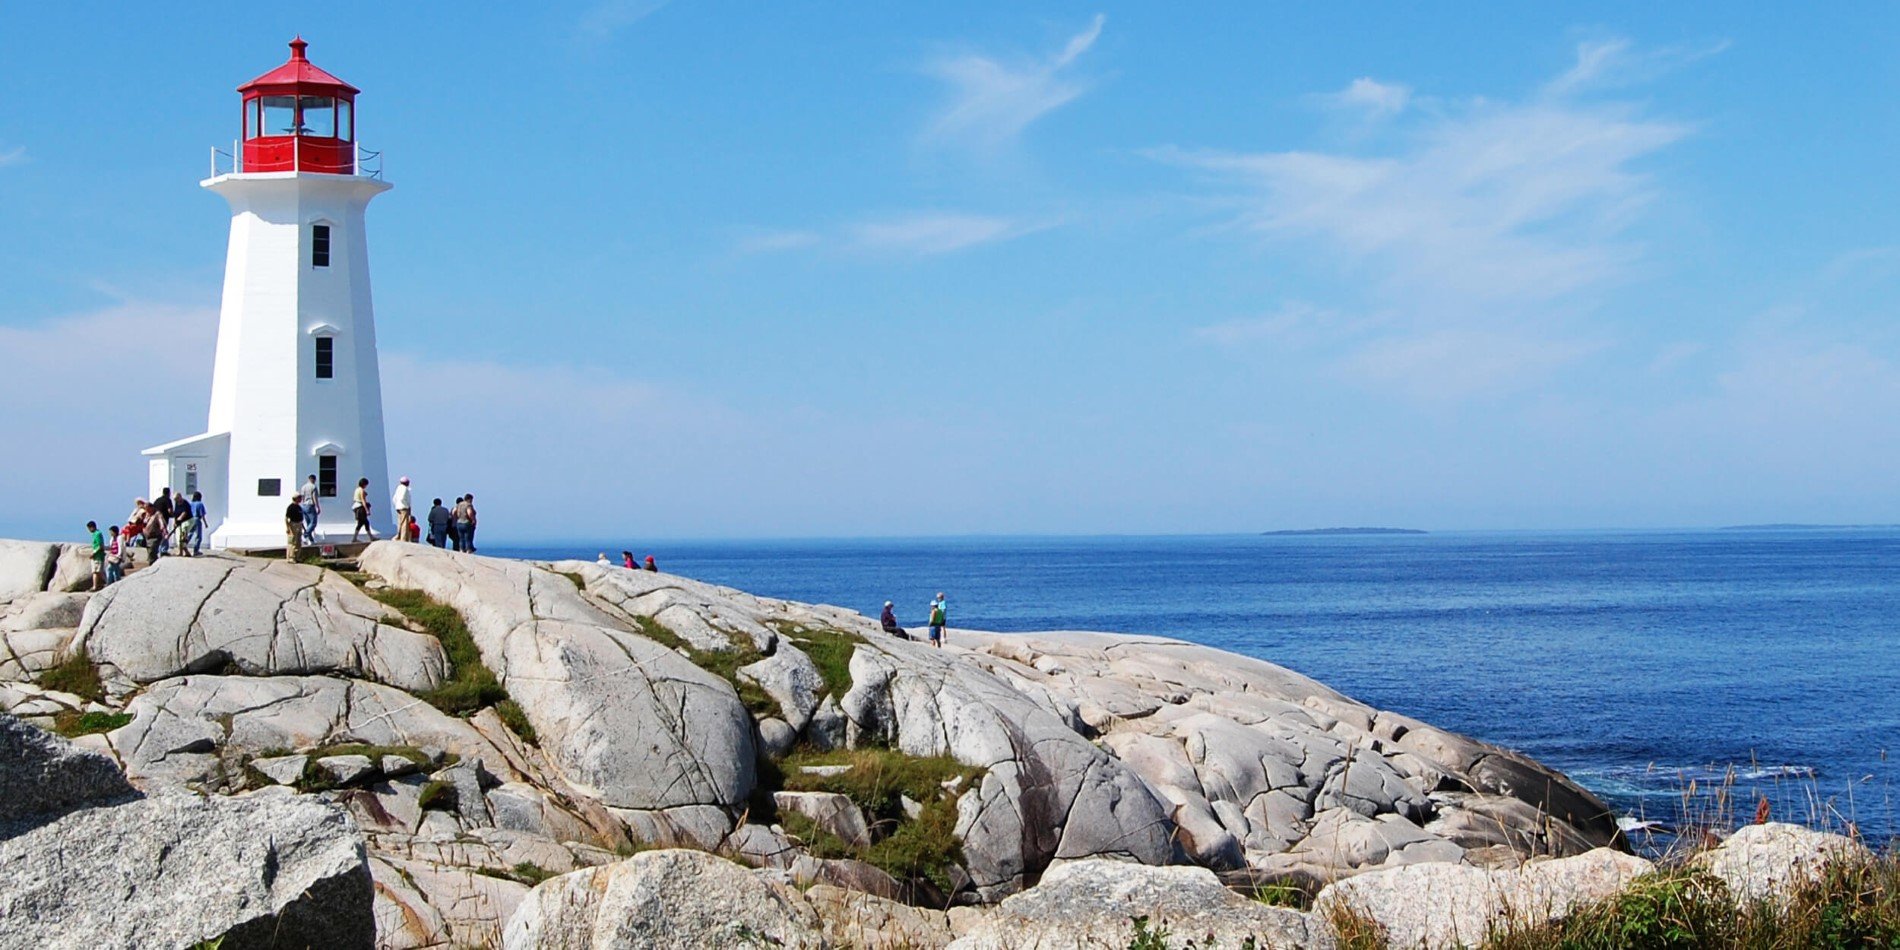 En statue af en person, der sidder på en klippe nær havet